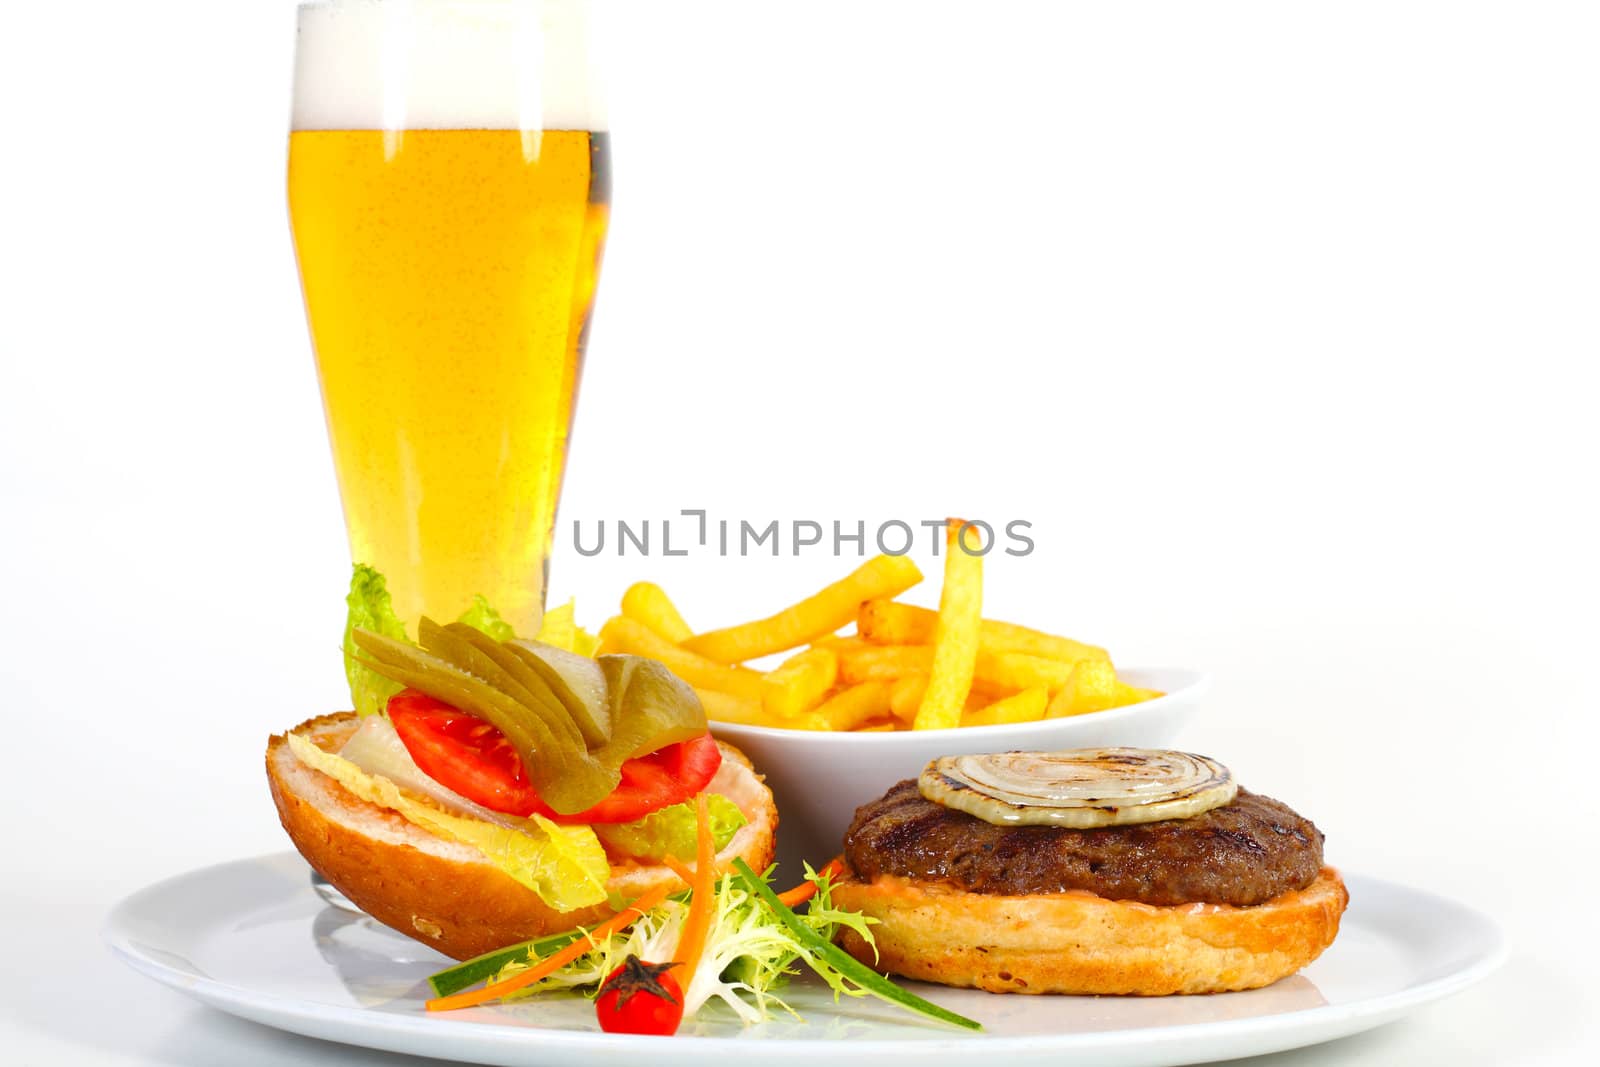 Hamburger and beer by shamtor